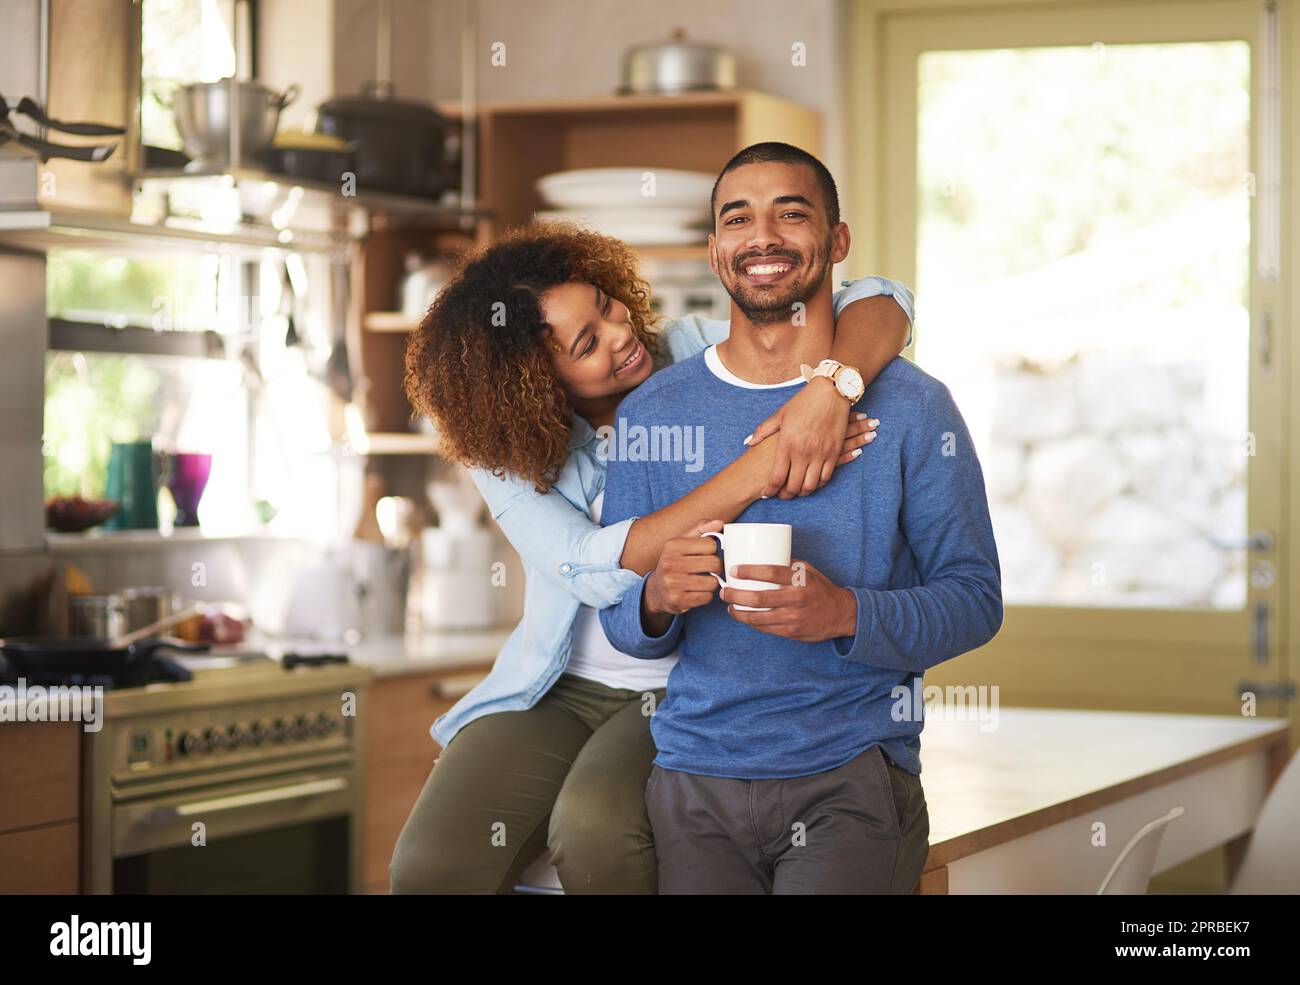 Schwarzes Paar, das sich entspannt, Kaffee trinkt und morgens in der Küche glücklich aussieht. Porträt eines jungen, fröhlichen und liebevollen Ehemanns und Ehefrauen, die am Wochenende eine romantische Zeit genießen Stockfoto